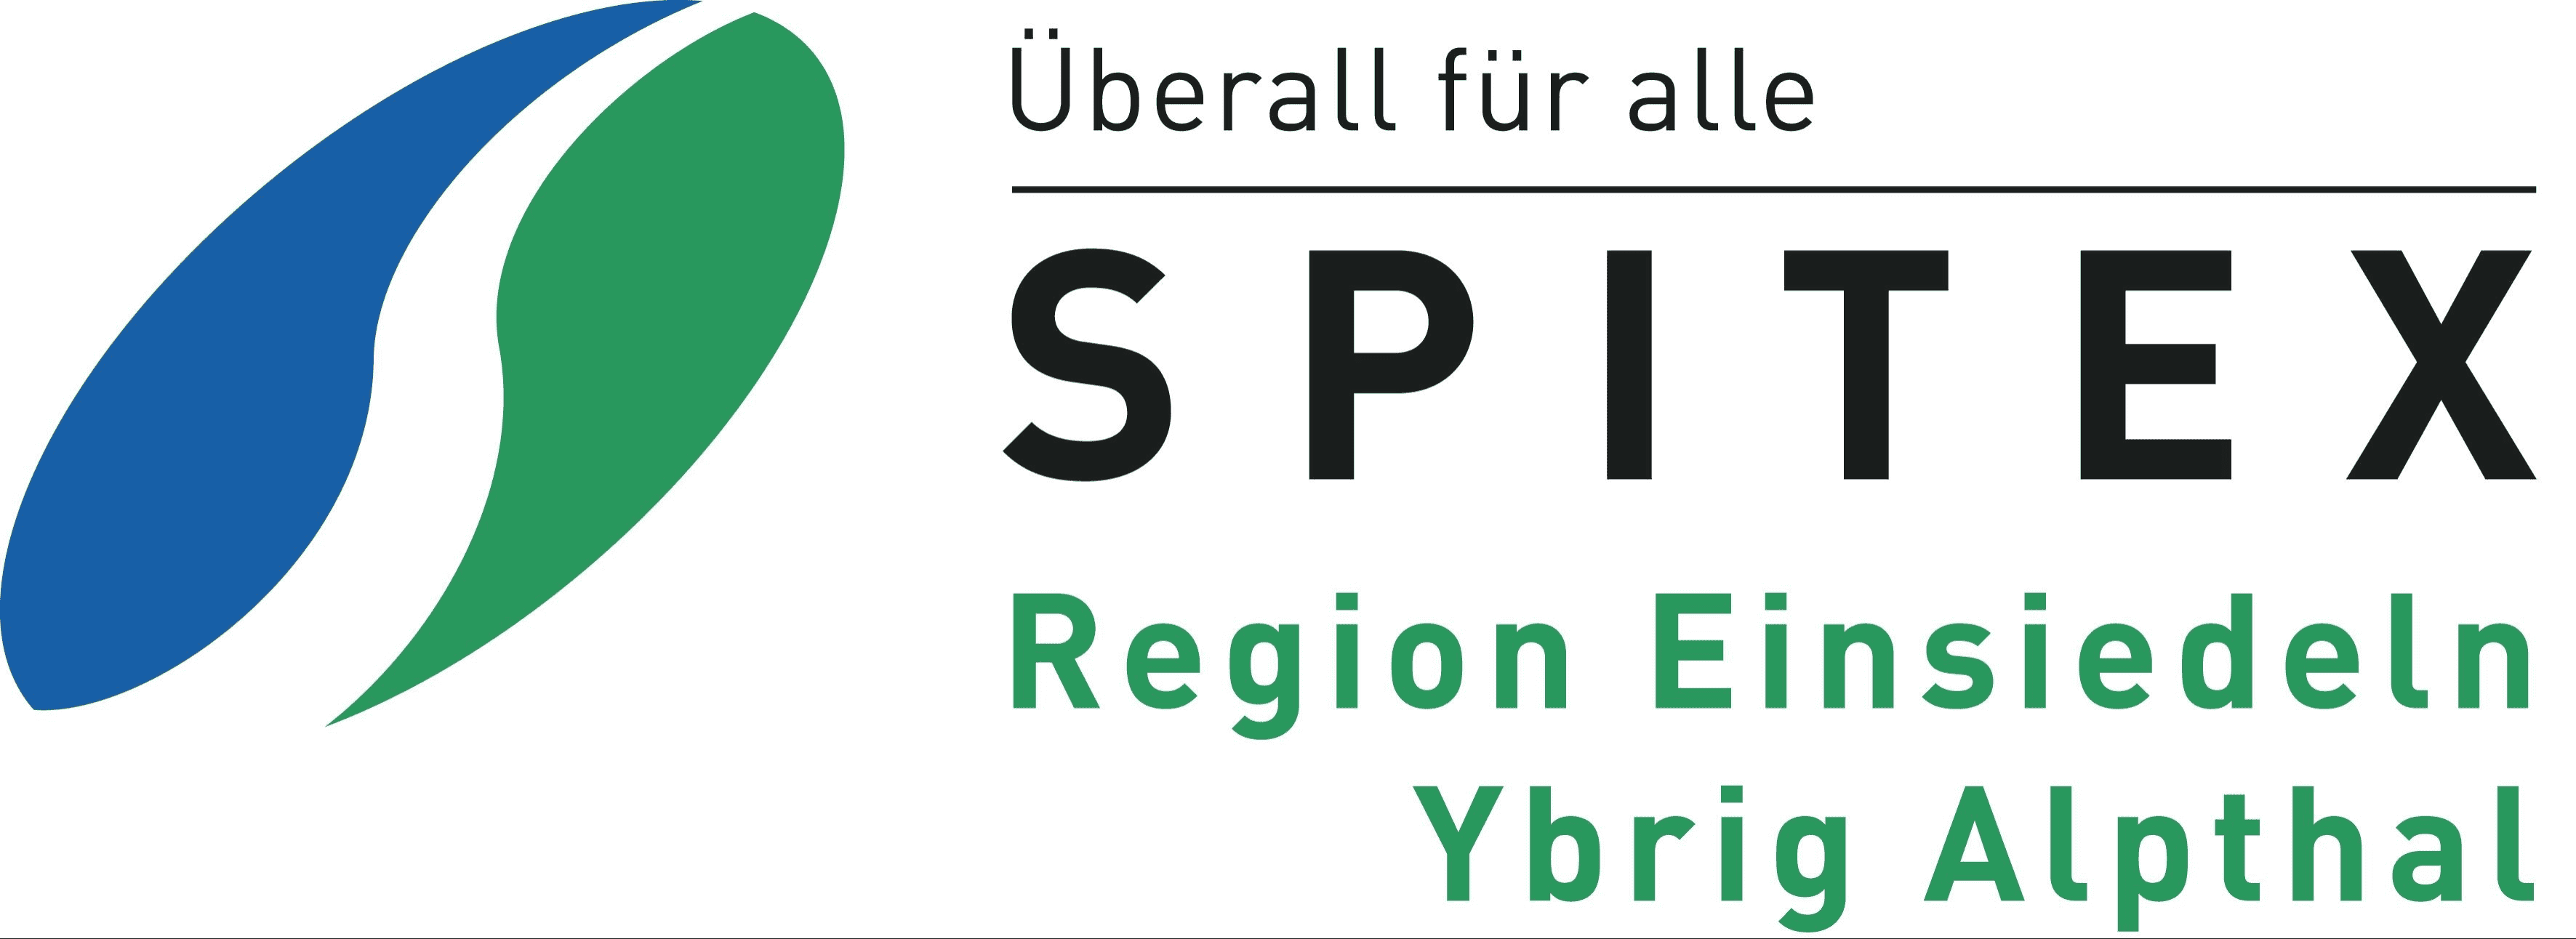 Spitex Region Einsiedeln Ybrig Alpthal